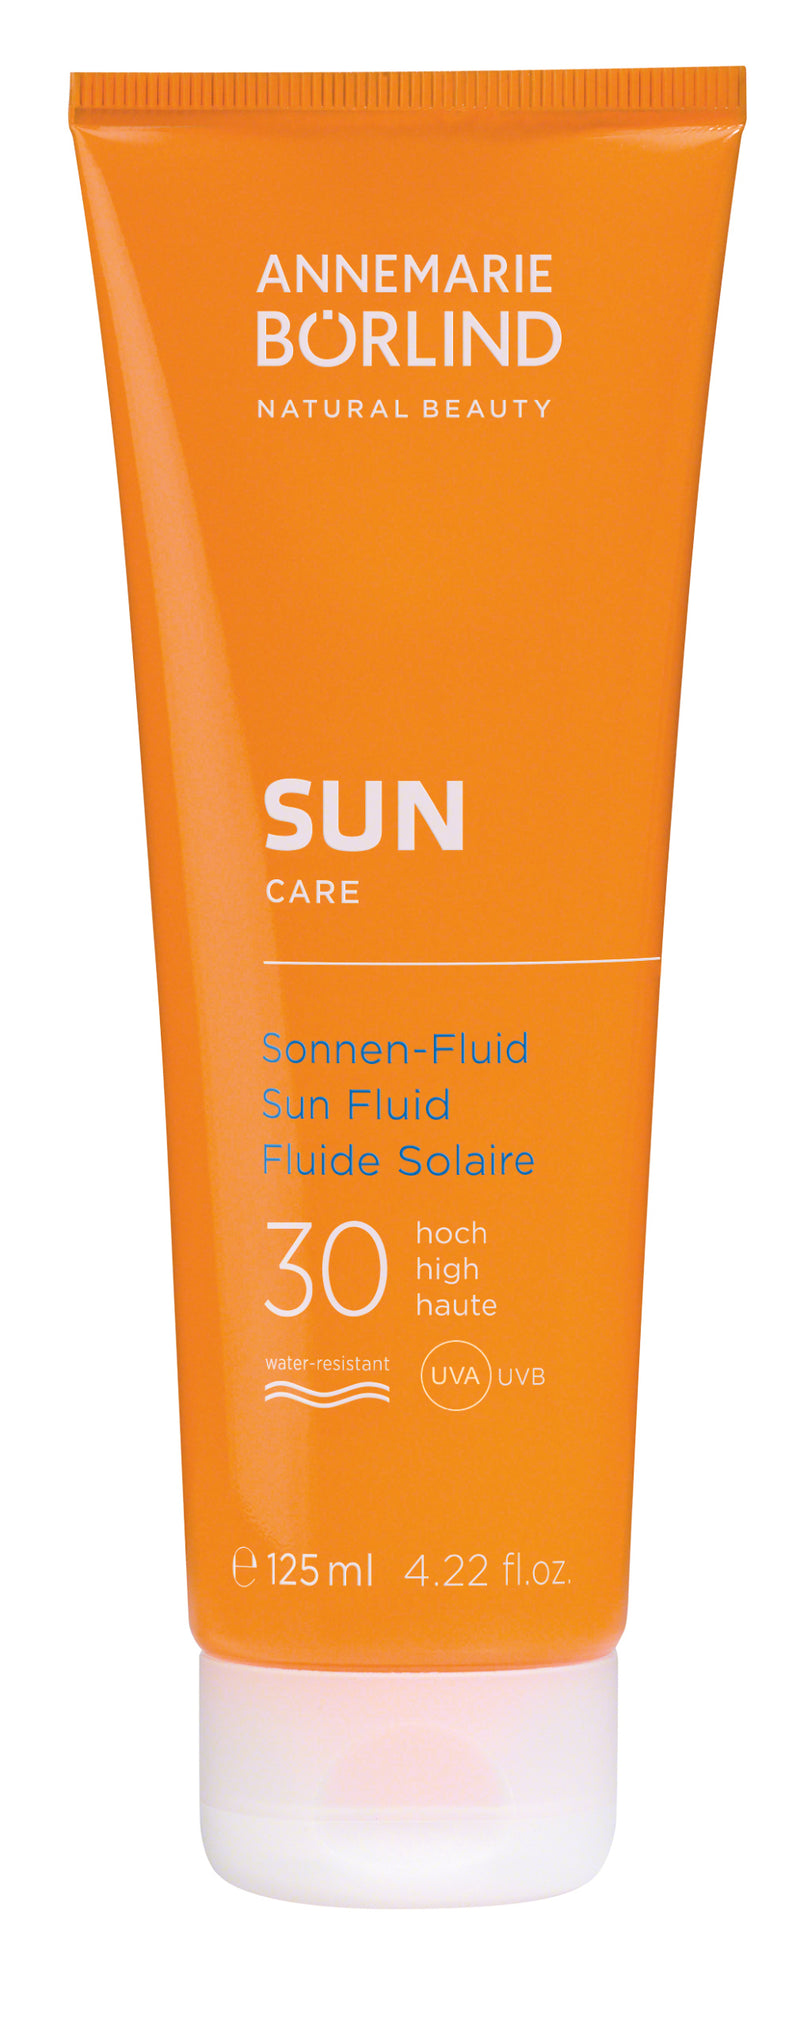 Annemarie Borlind Sun Care Sun Fluid SPF 30 Protective fluid from the sun SPF 30 125 ml